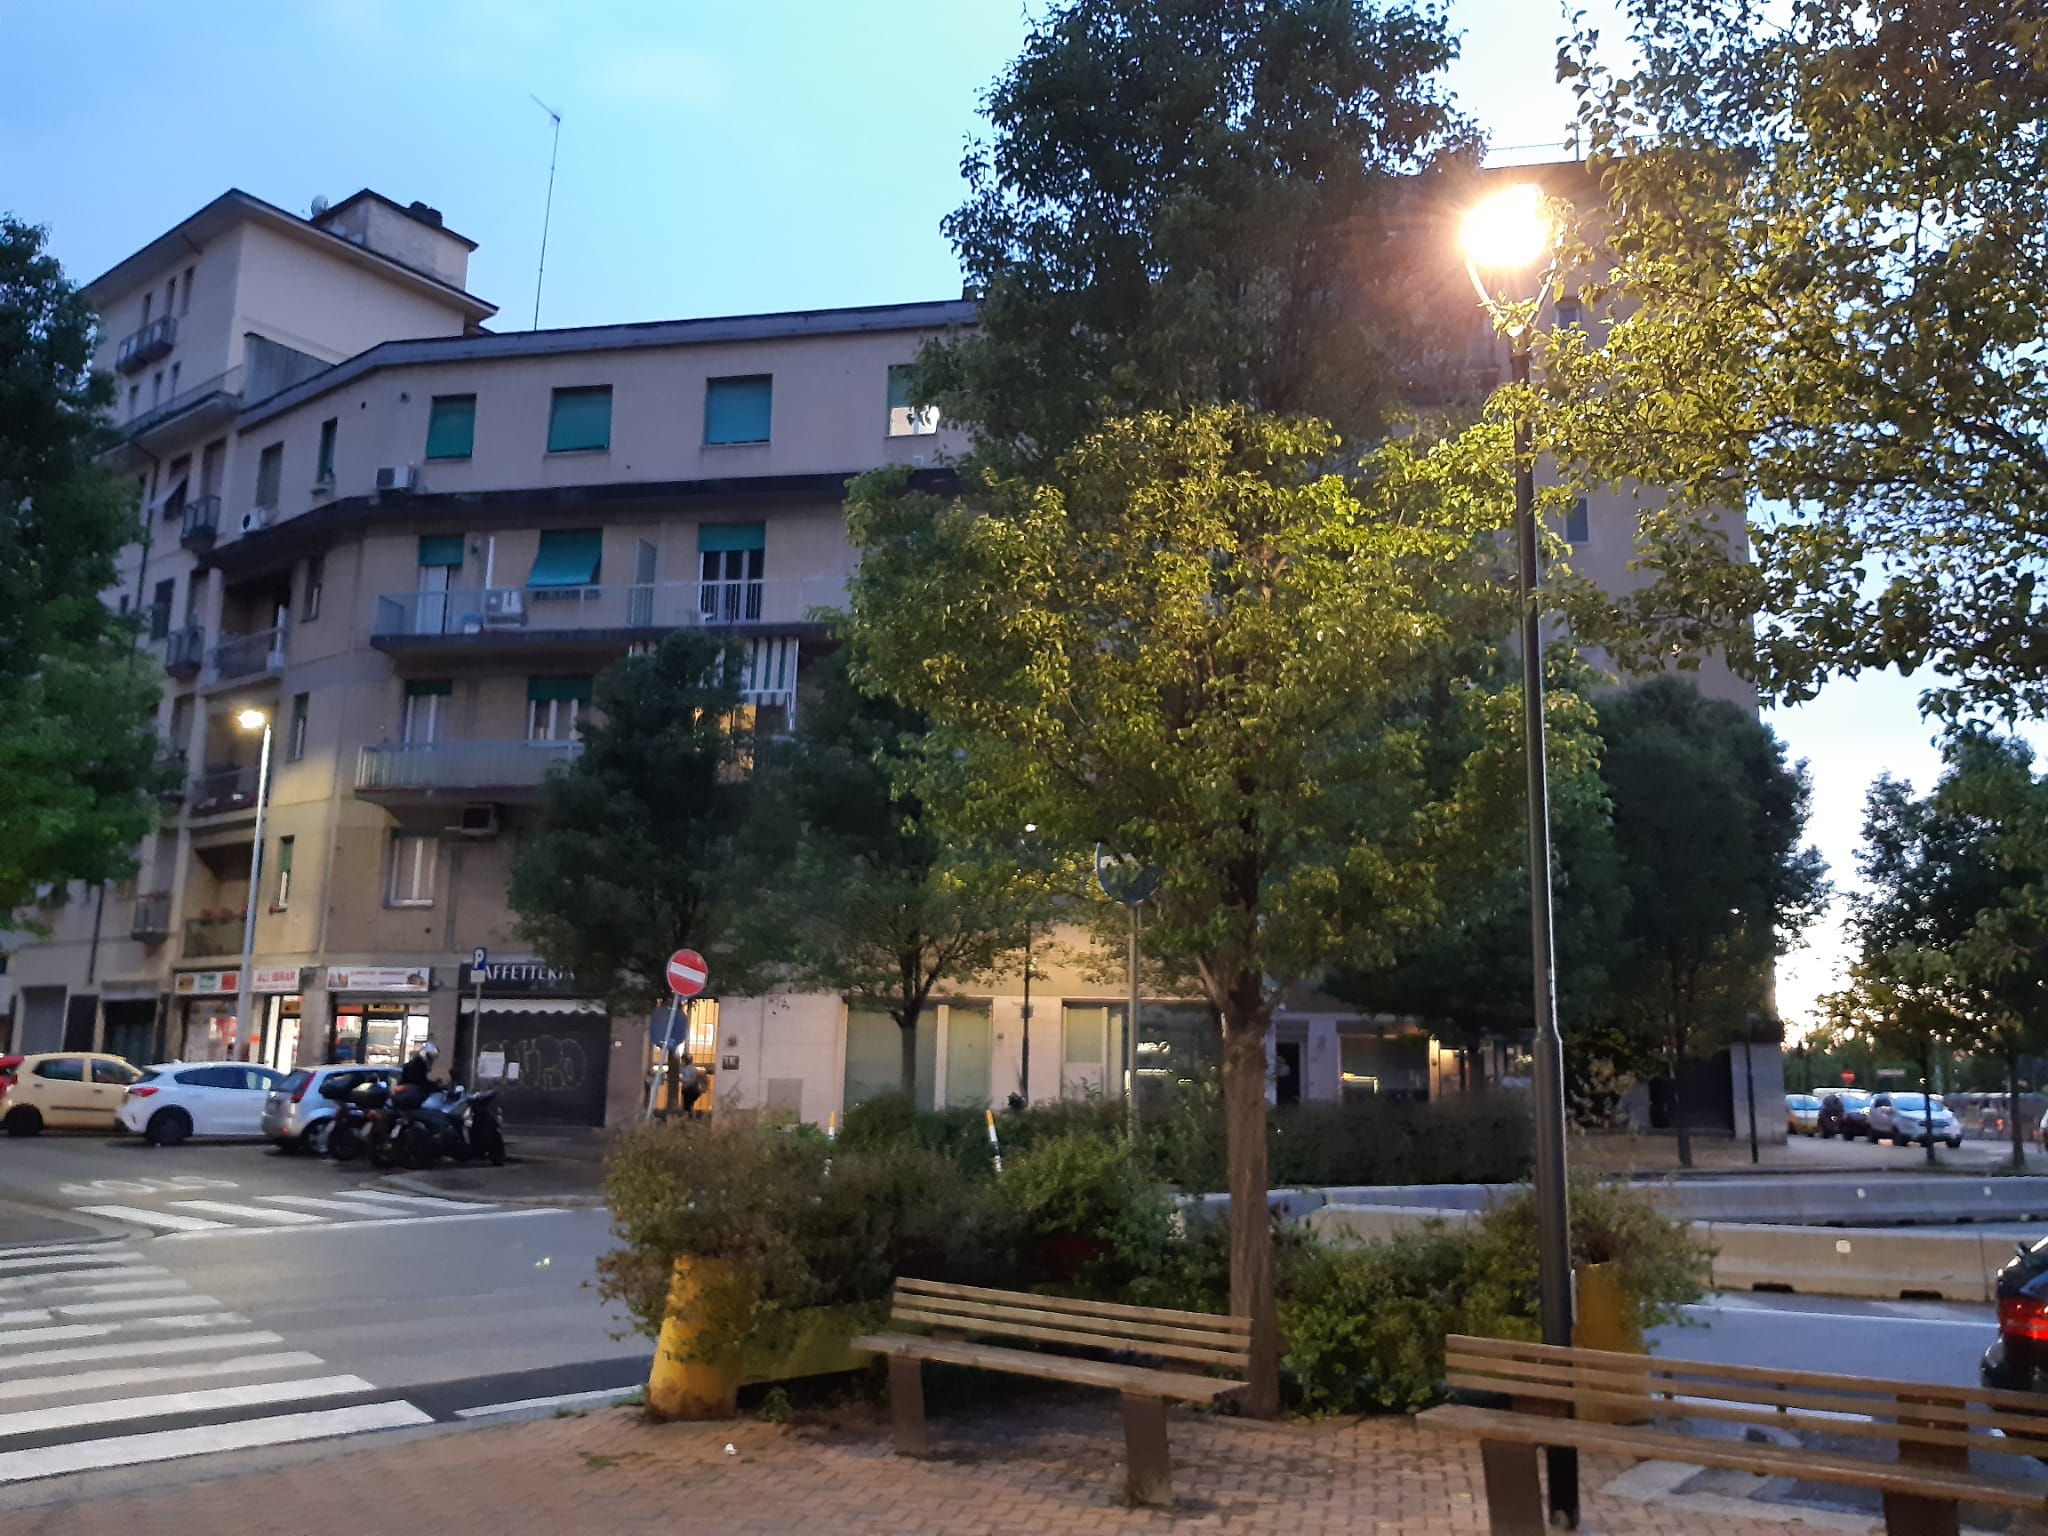 Nuova illuminazione via Mugello via Casentino viale Guidoni